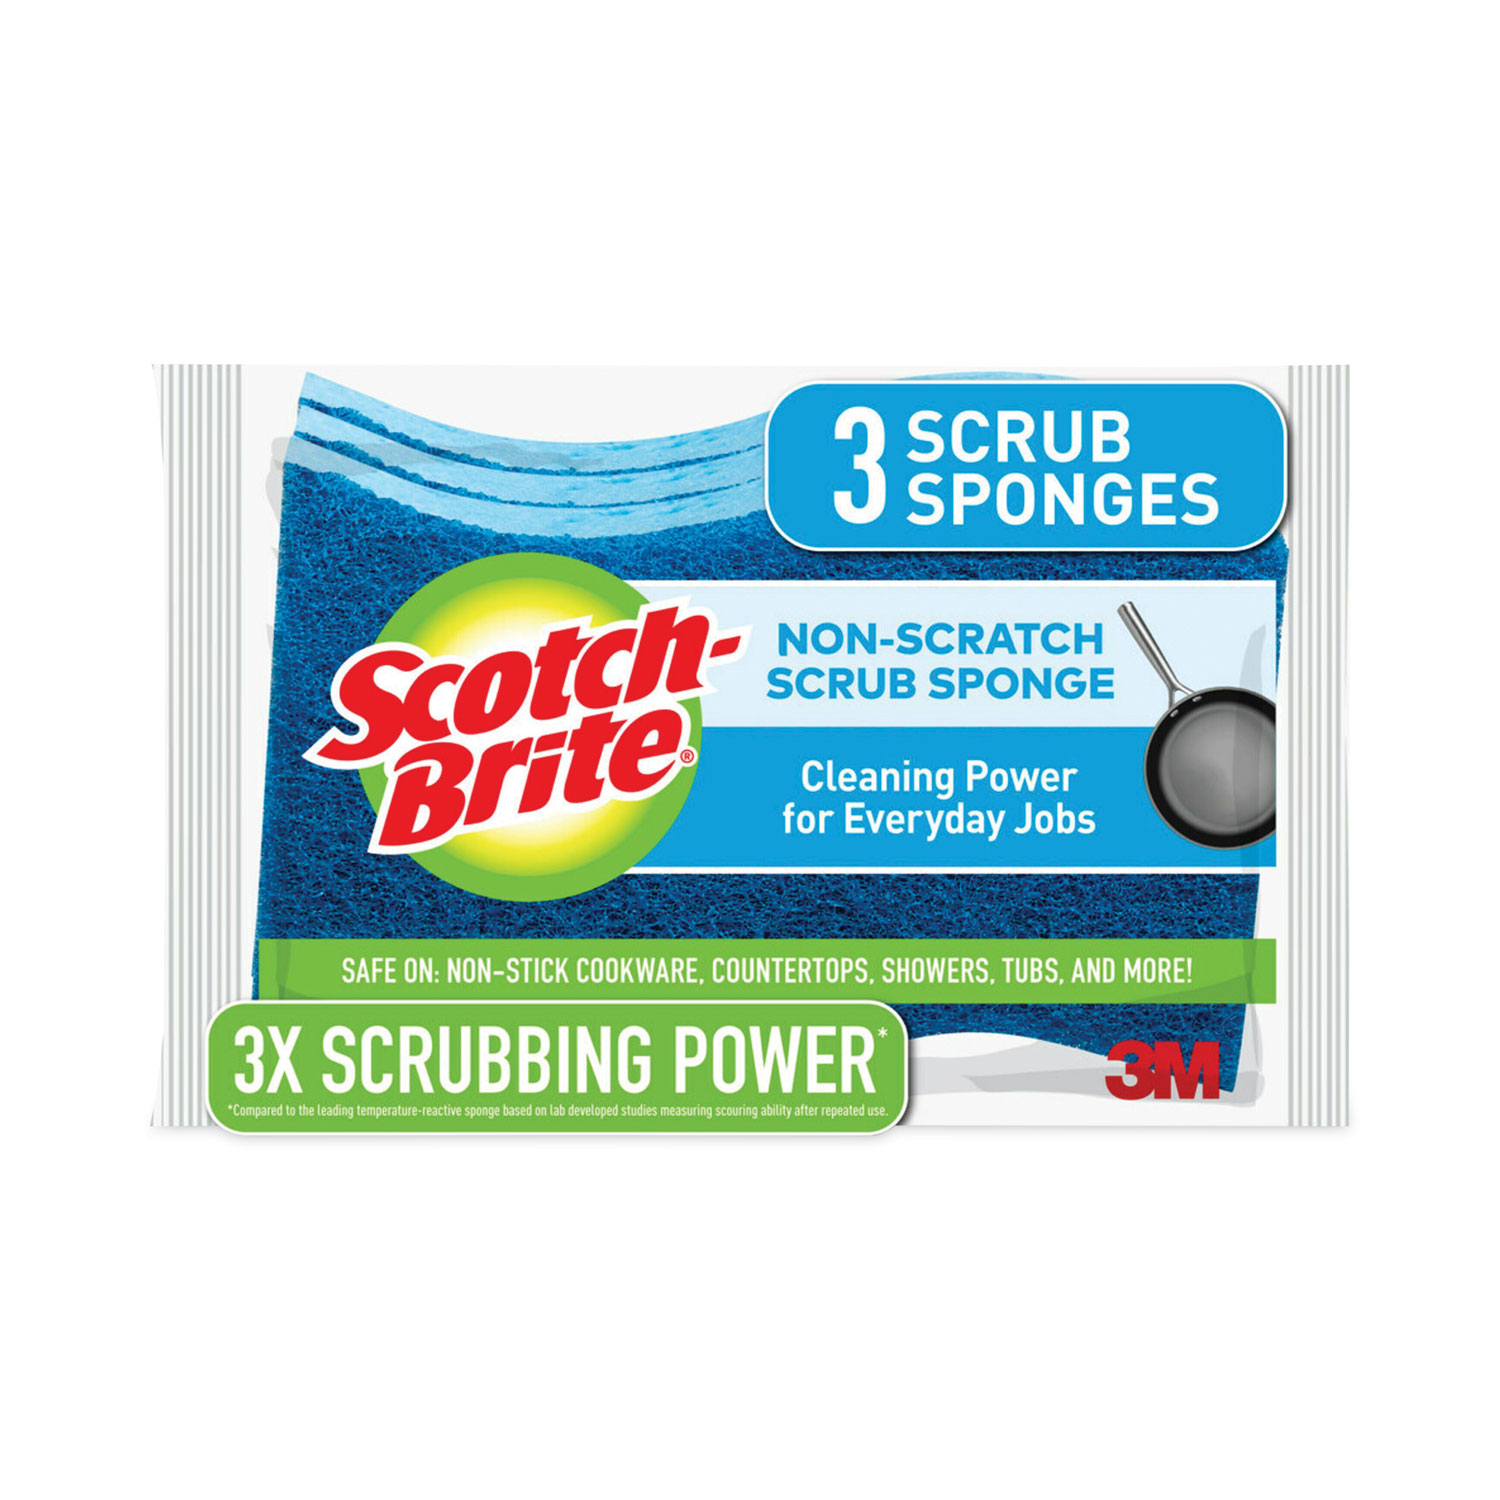 Non-Scratch Multi-Purpose Scrub Sponge, 4.4 x 2.6, 0.8 Thick